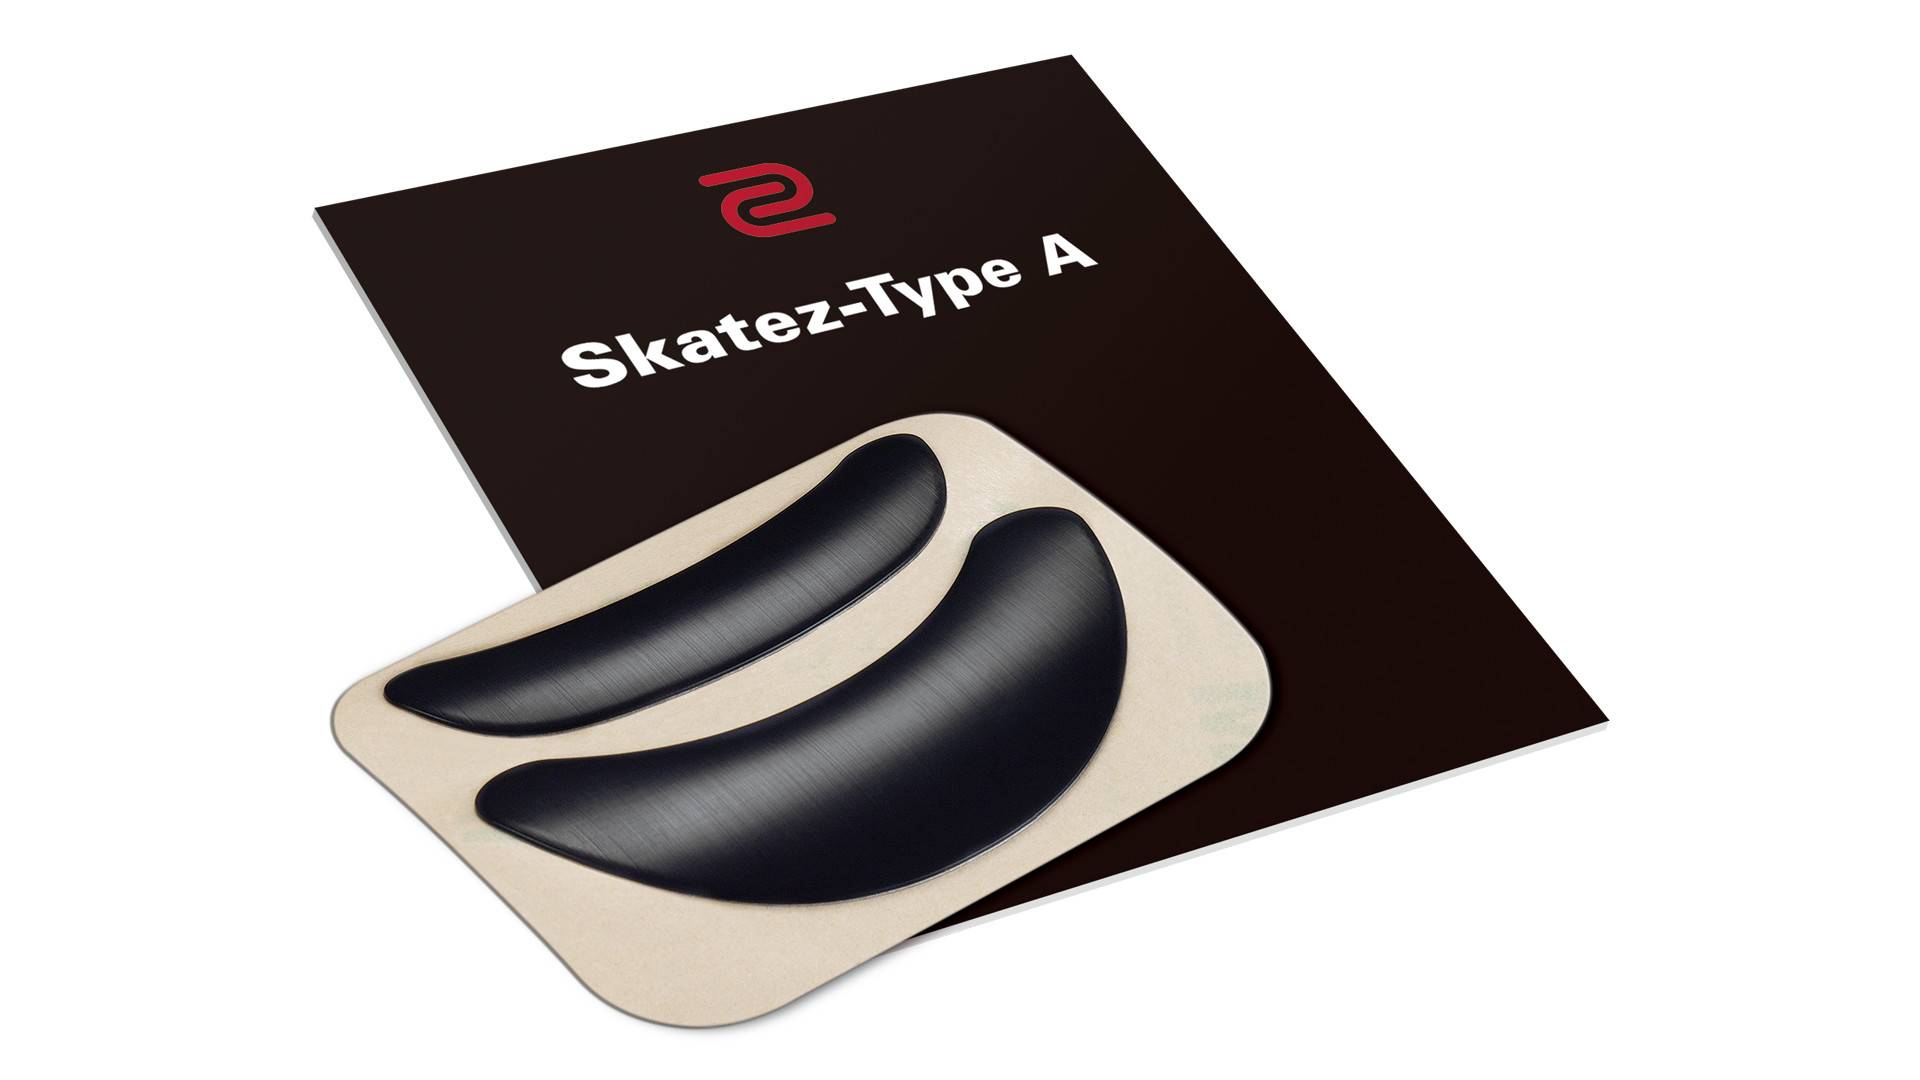 BENQ Zowie Тефлоновые накладки для мышей Skatez-Type A, для моделей FK Series / ZA11 /  ZA12, толщина 0,6 мм.